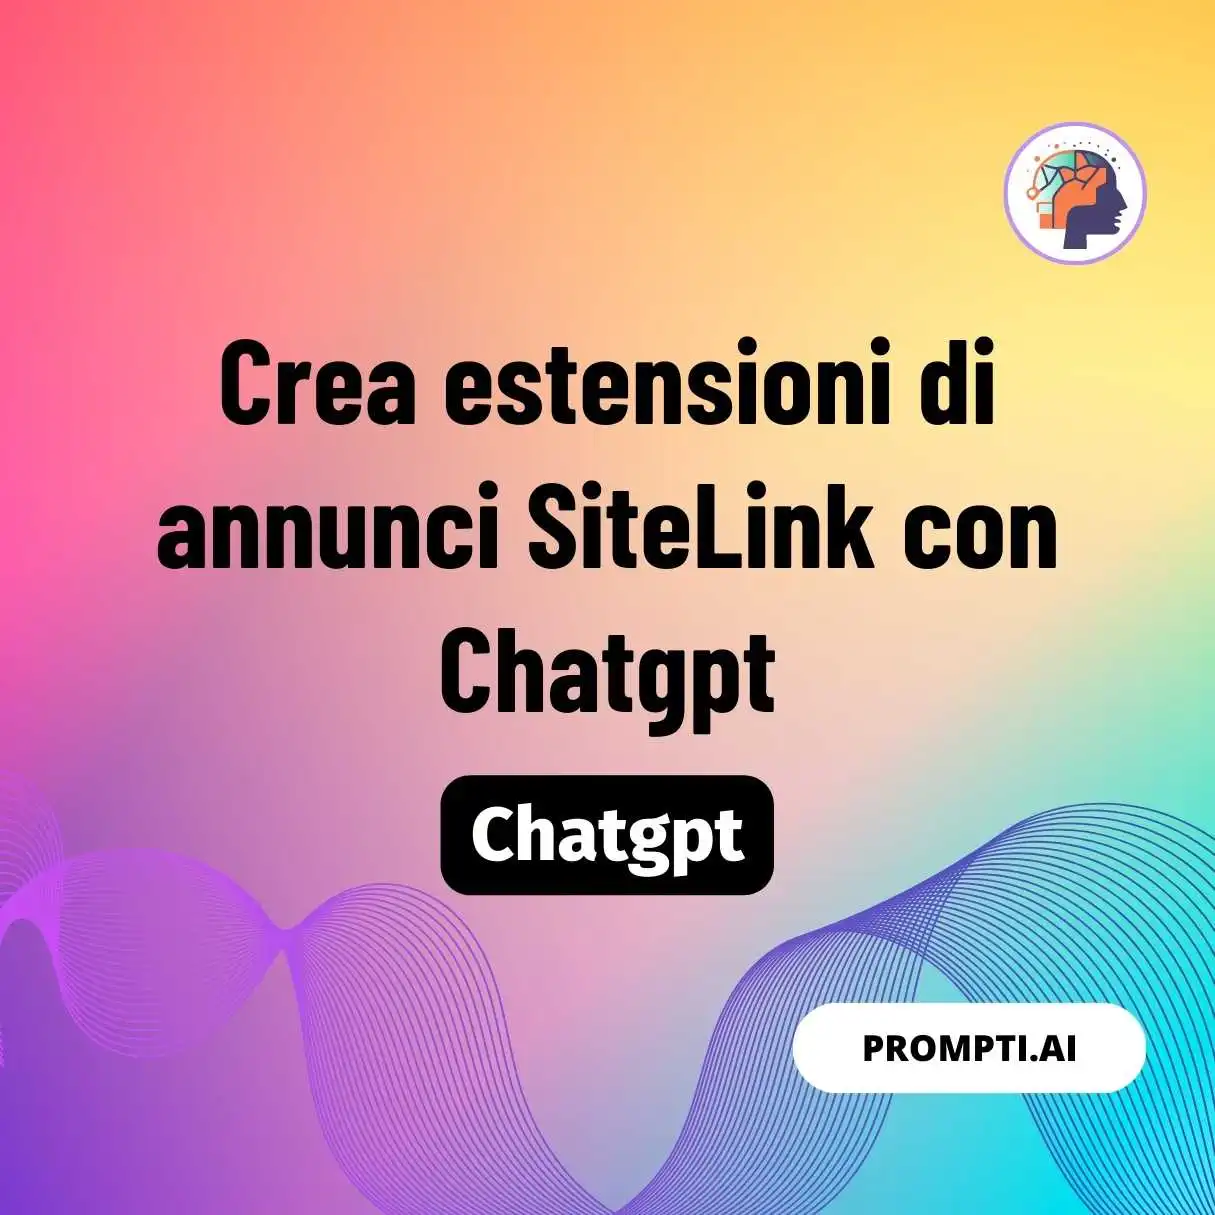 Crea estensioni di annunci SiteLink con Chatgpt